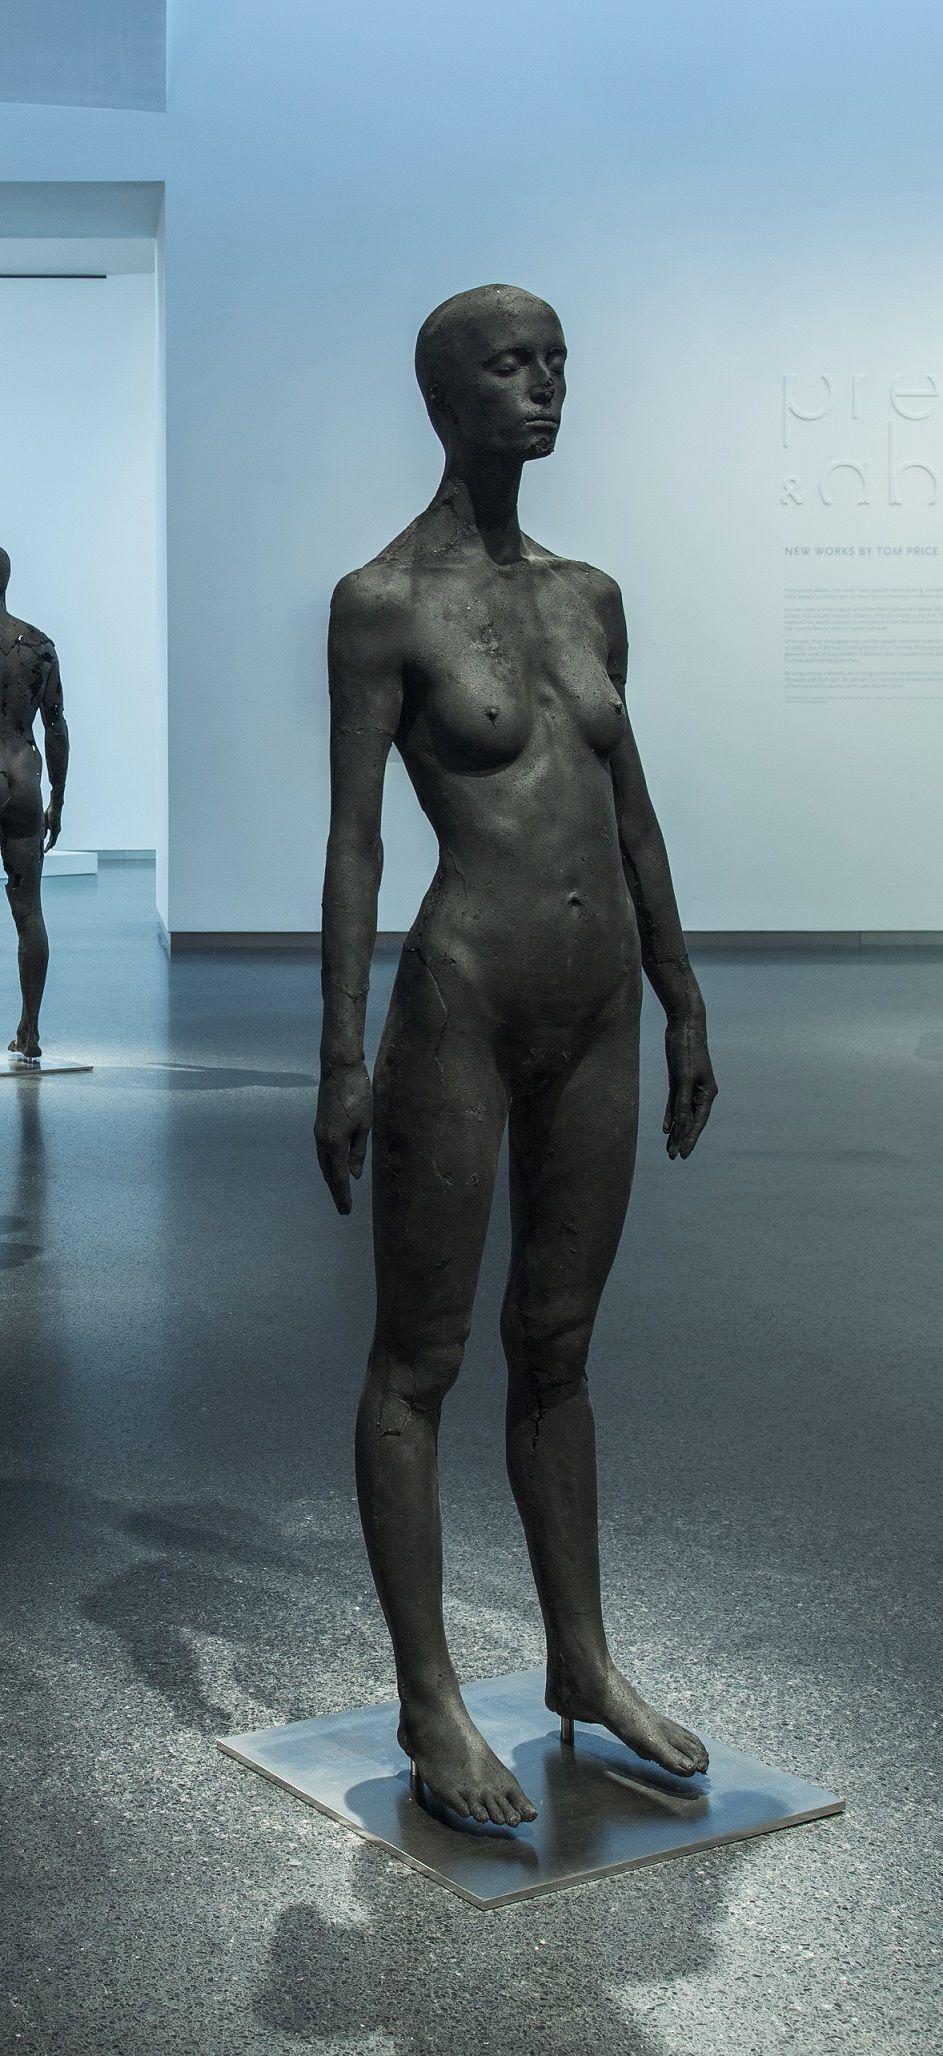 La presencia de la ausencia - Mujer (I) de Tom Price - Escultura de carbón, cuerpo desnudo